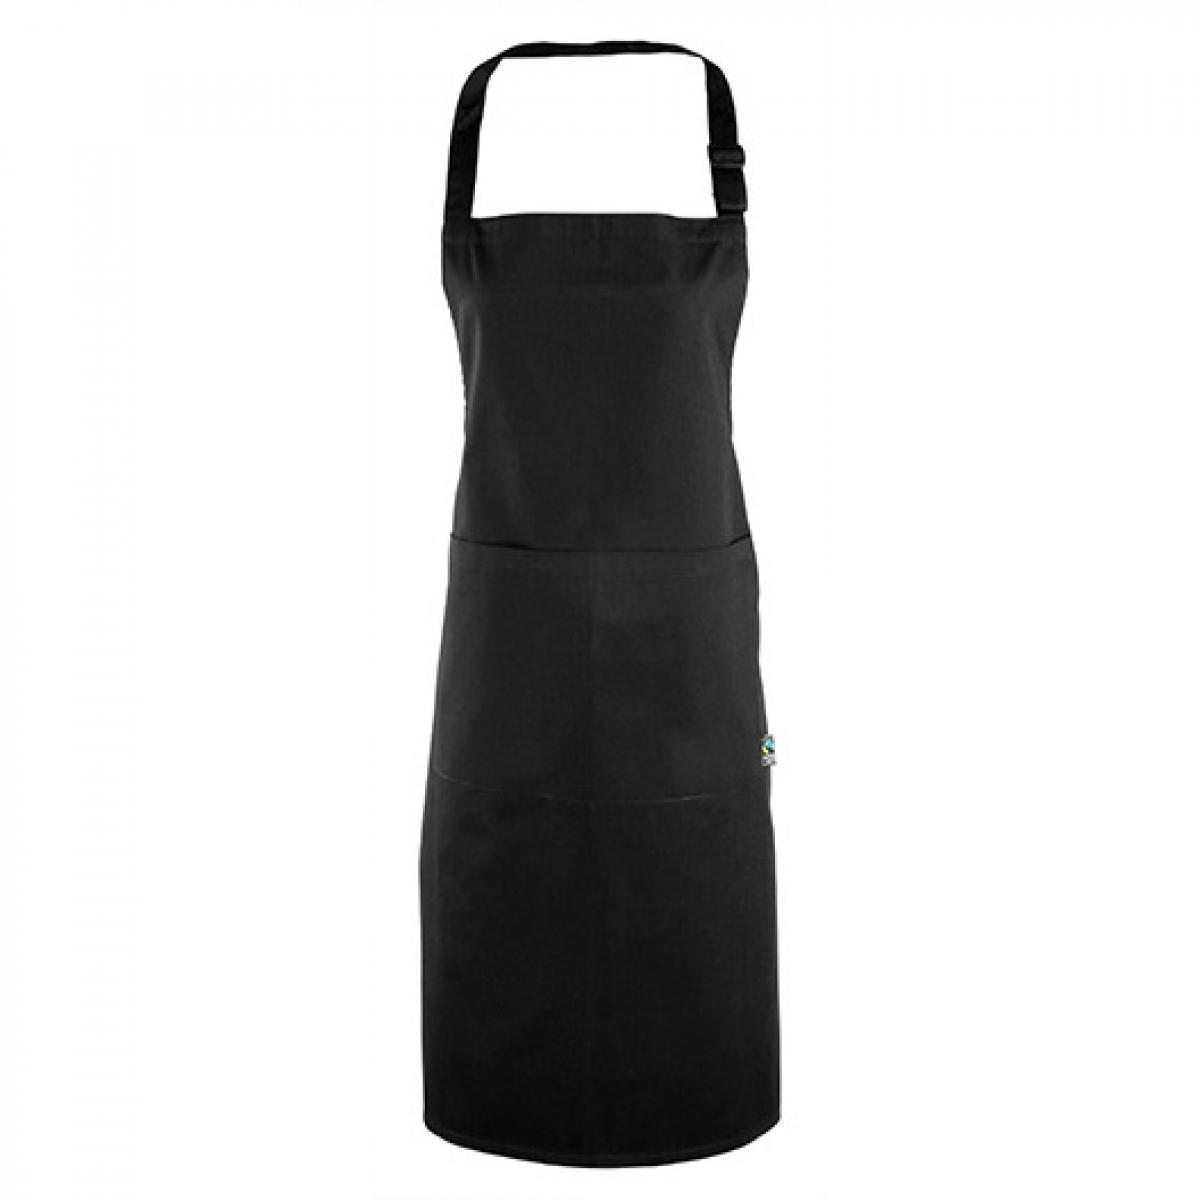 Hersteller: Premier Workwear Herstellernummer: PR112 Artikelbezeichnung: Latzschürze (Fairtrade Baumwolle) 60 x 84 cm Farbe: Black